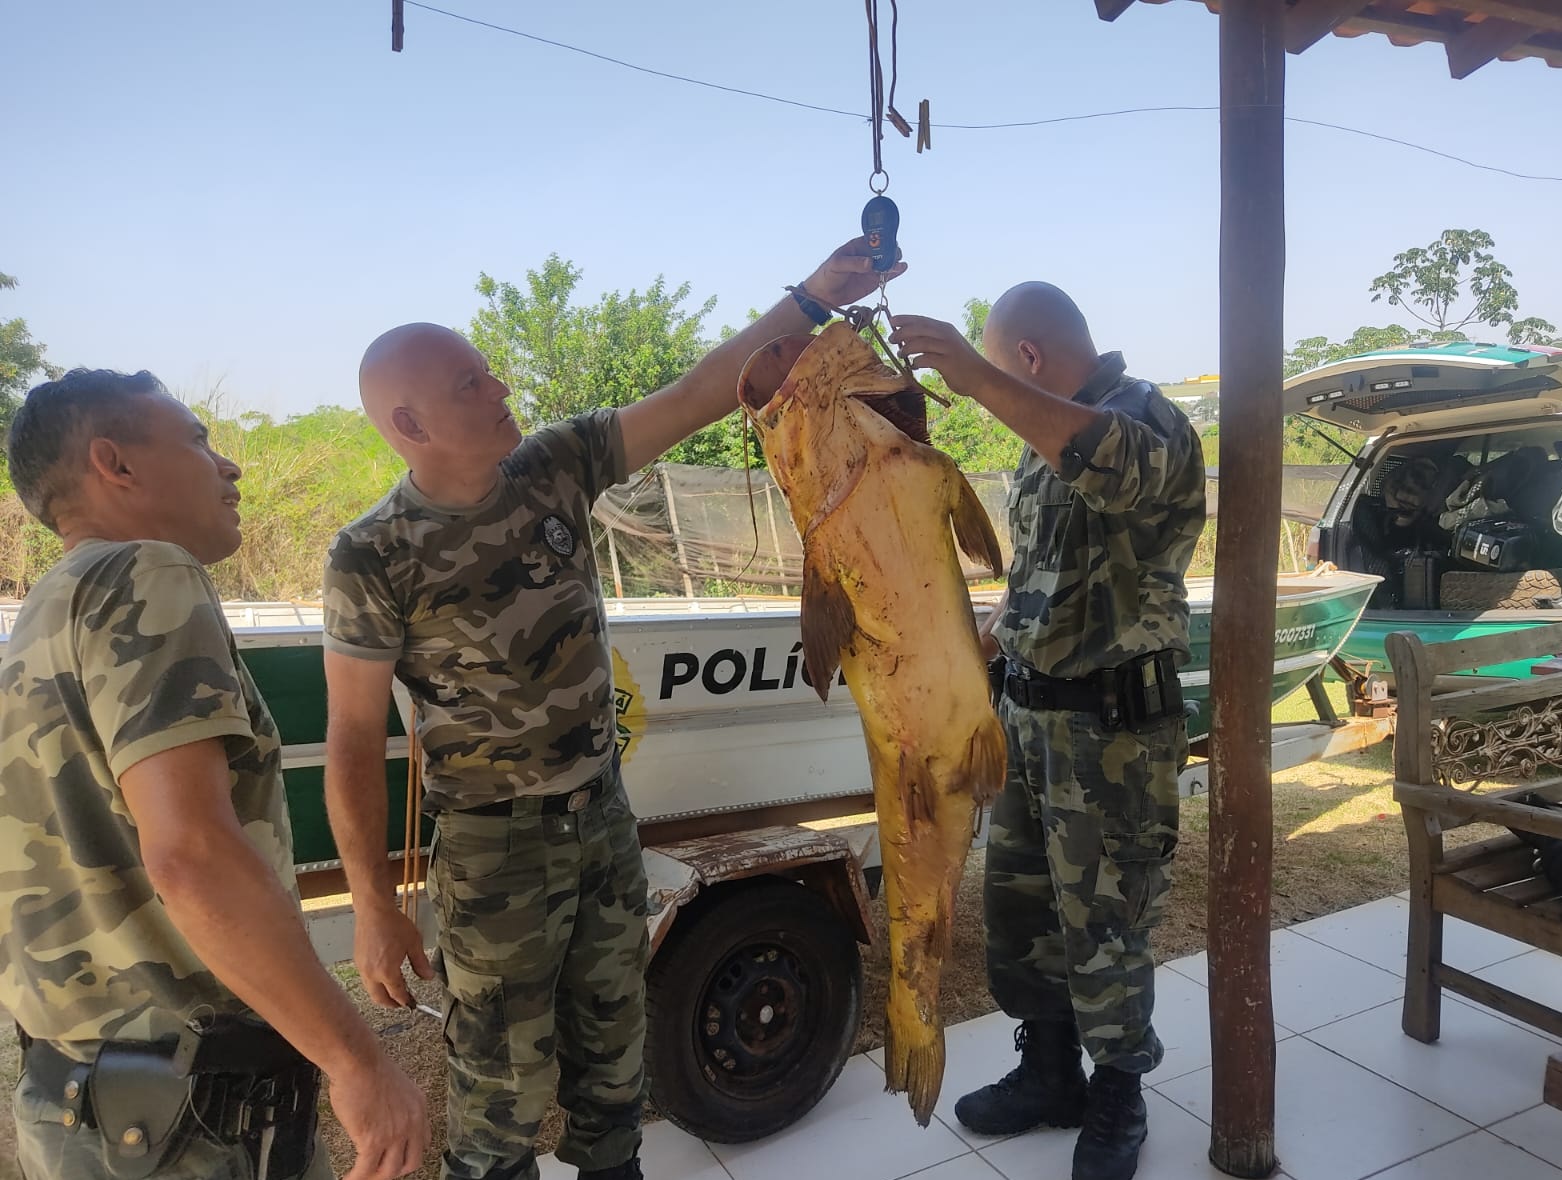  homem pesca peixe de 90 kg no Rio Ivaí e é preso 5 